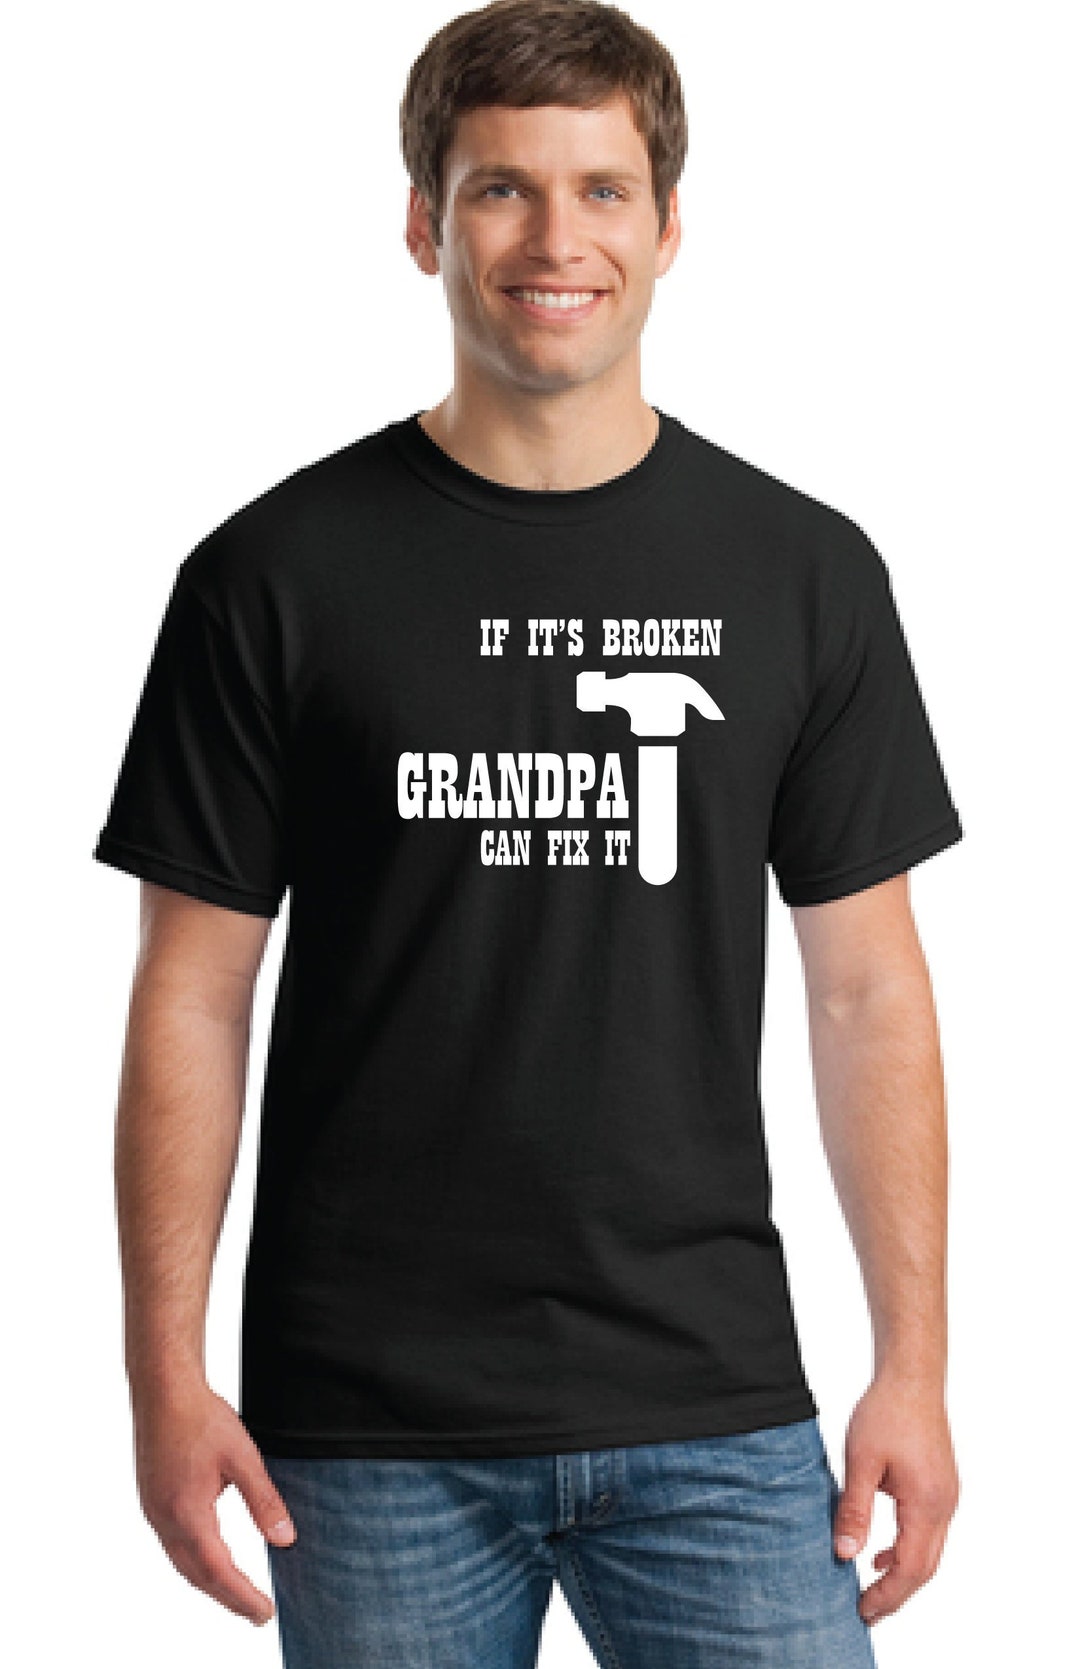 Grandpa Gift-grandpa T-shirt gift for Grandfather-men's - Etsy